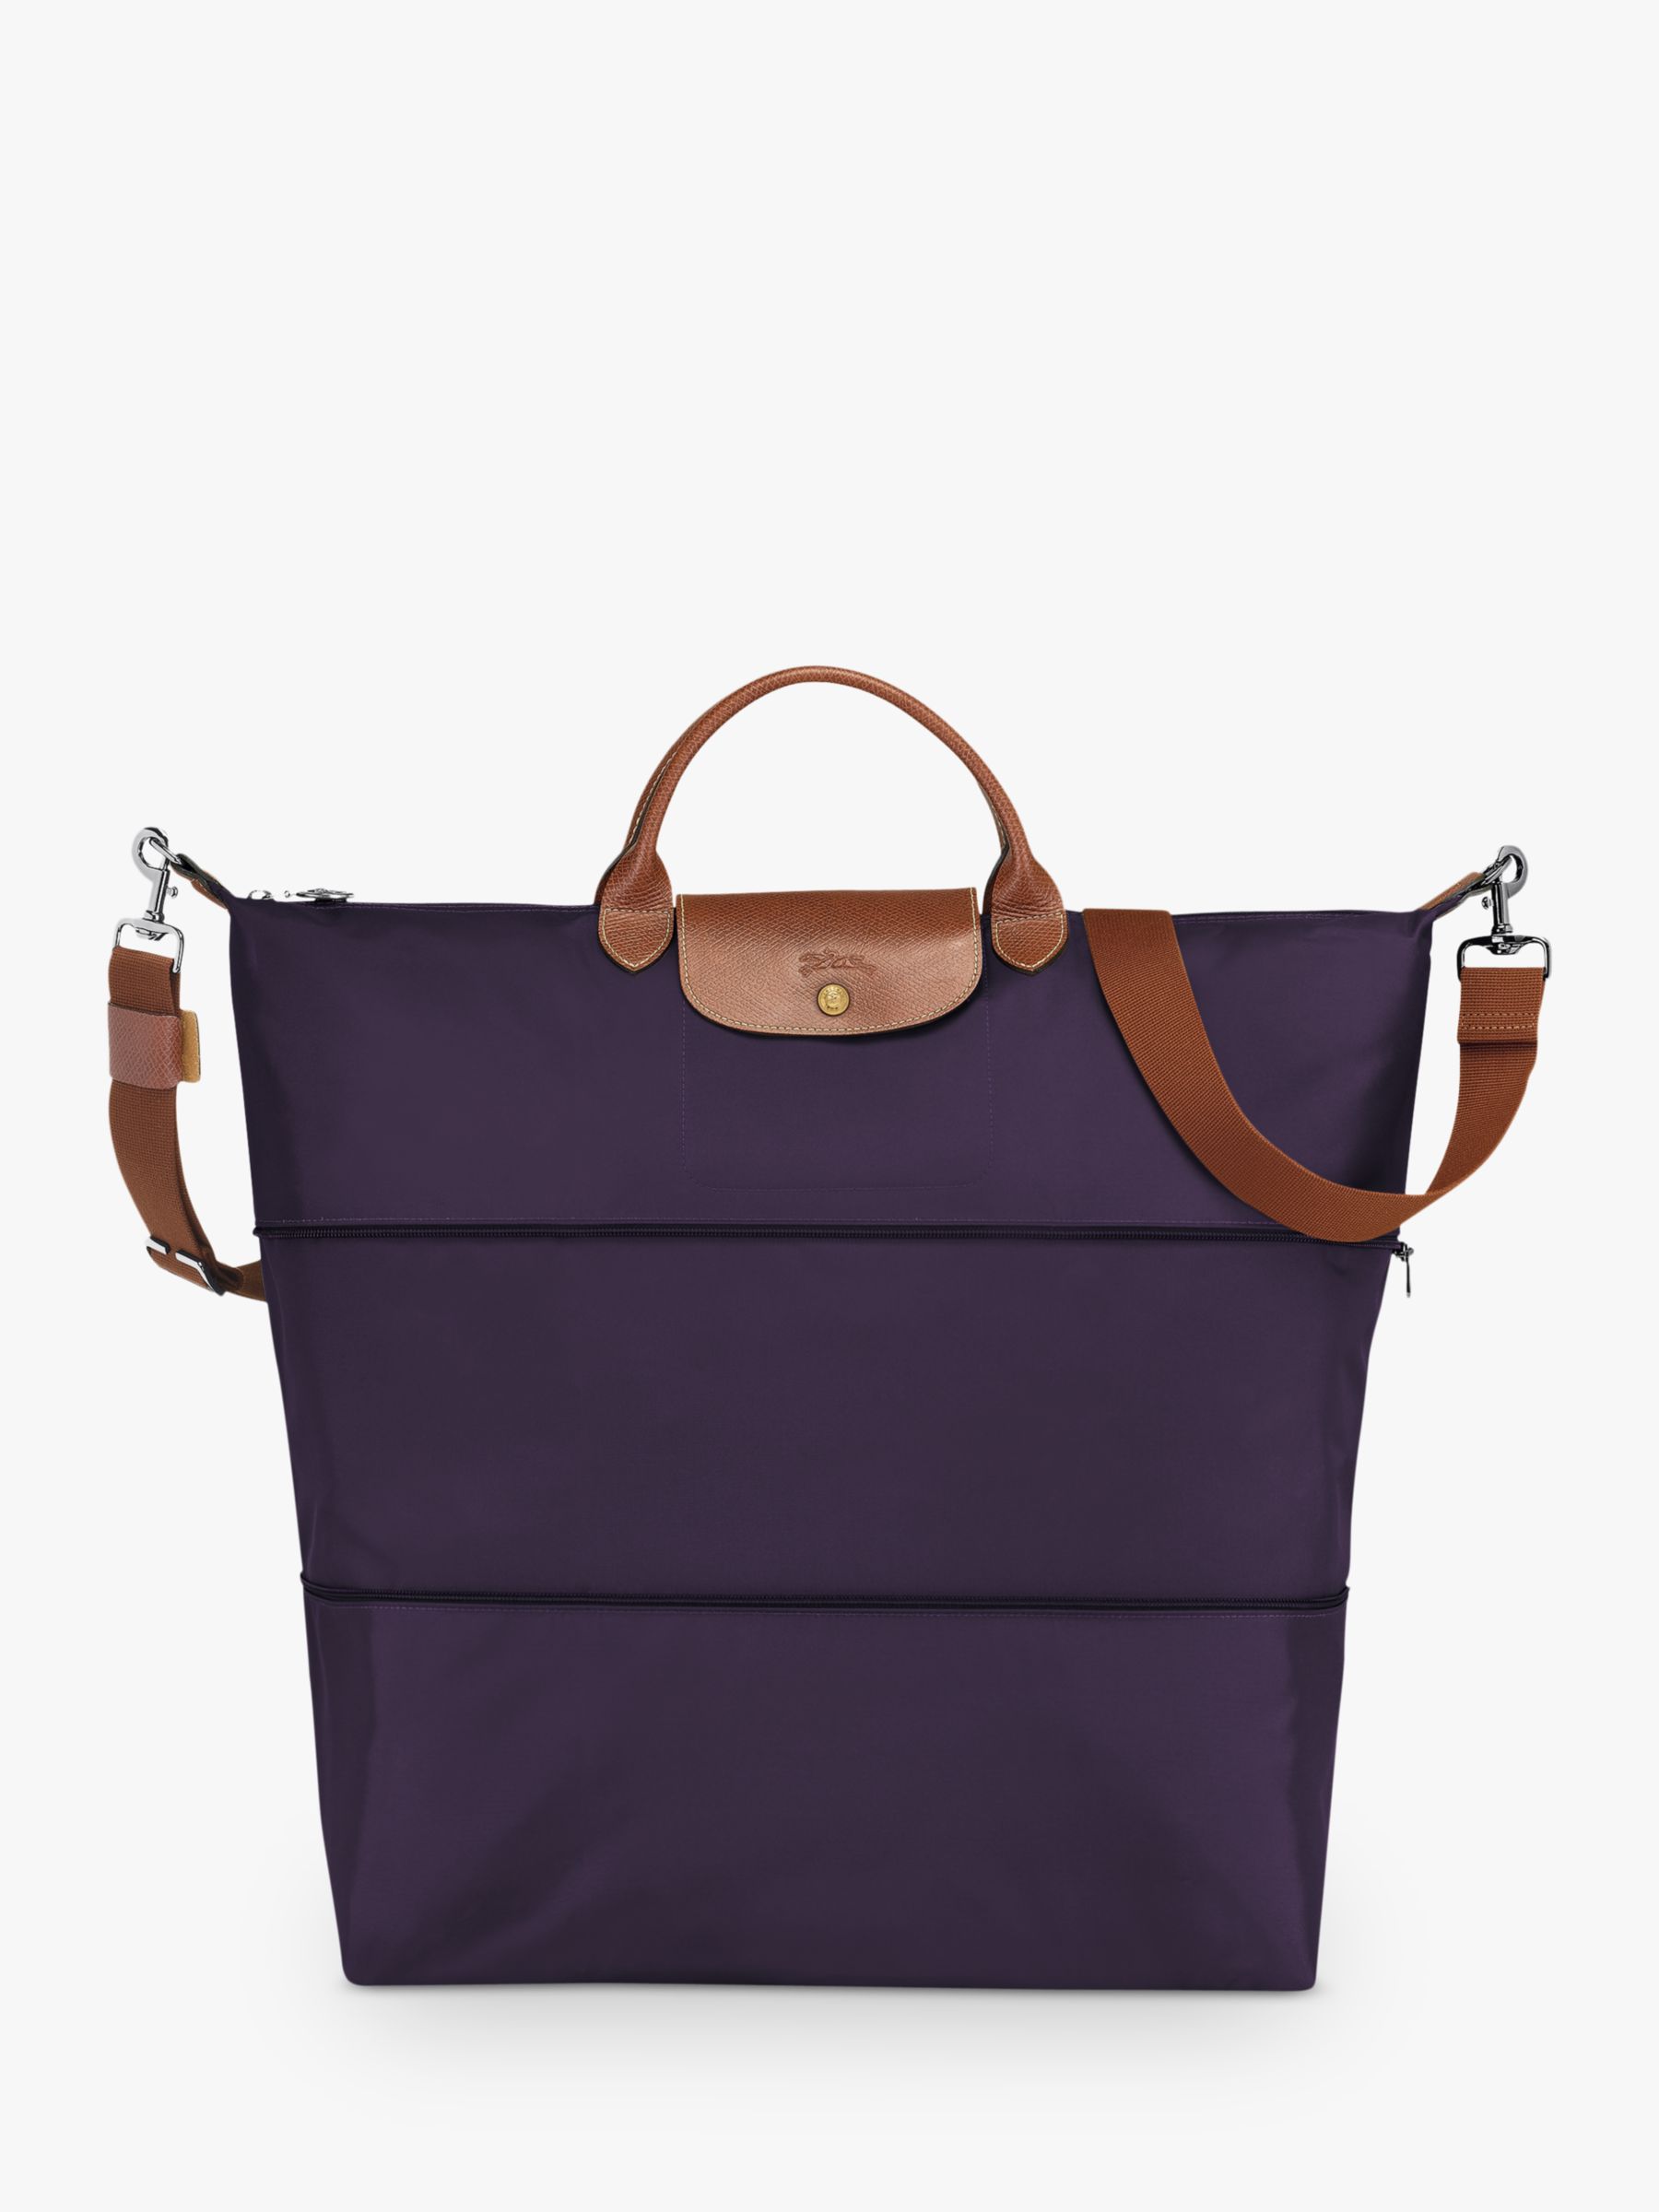 Longchamp Le Pliage Original Expandable Travel Bag